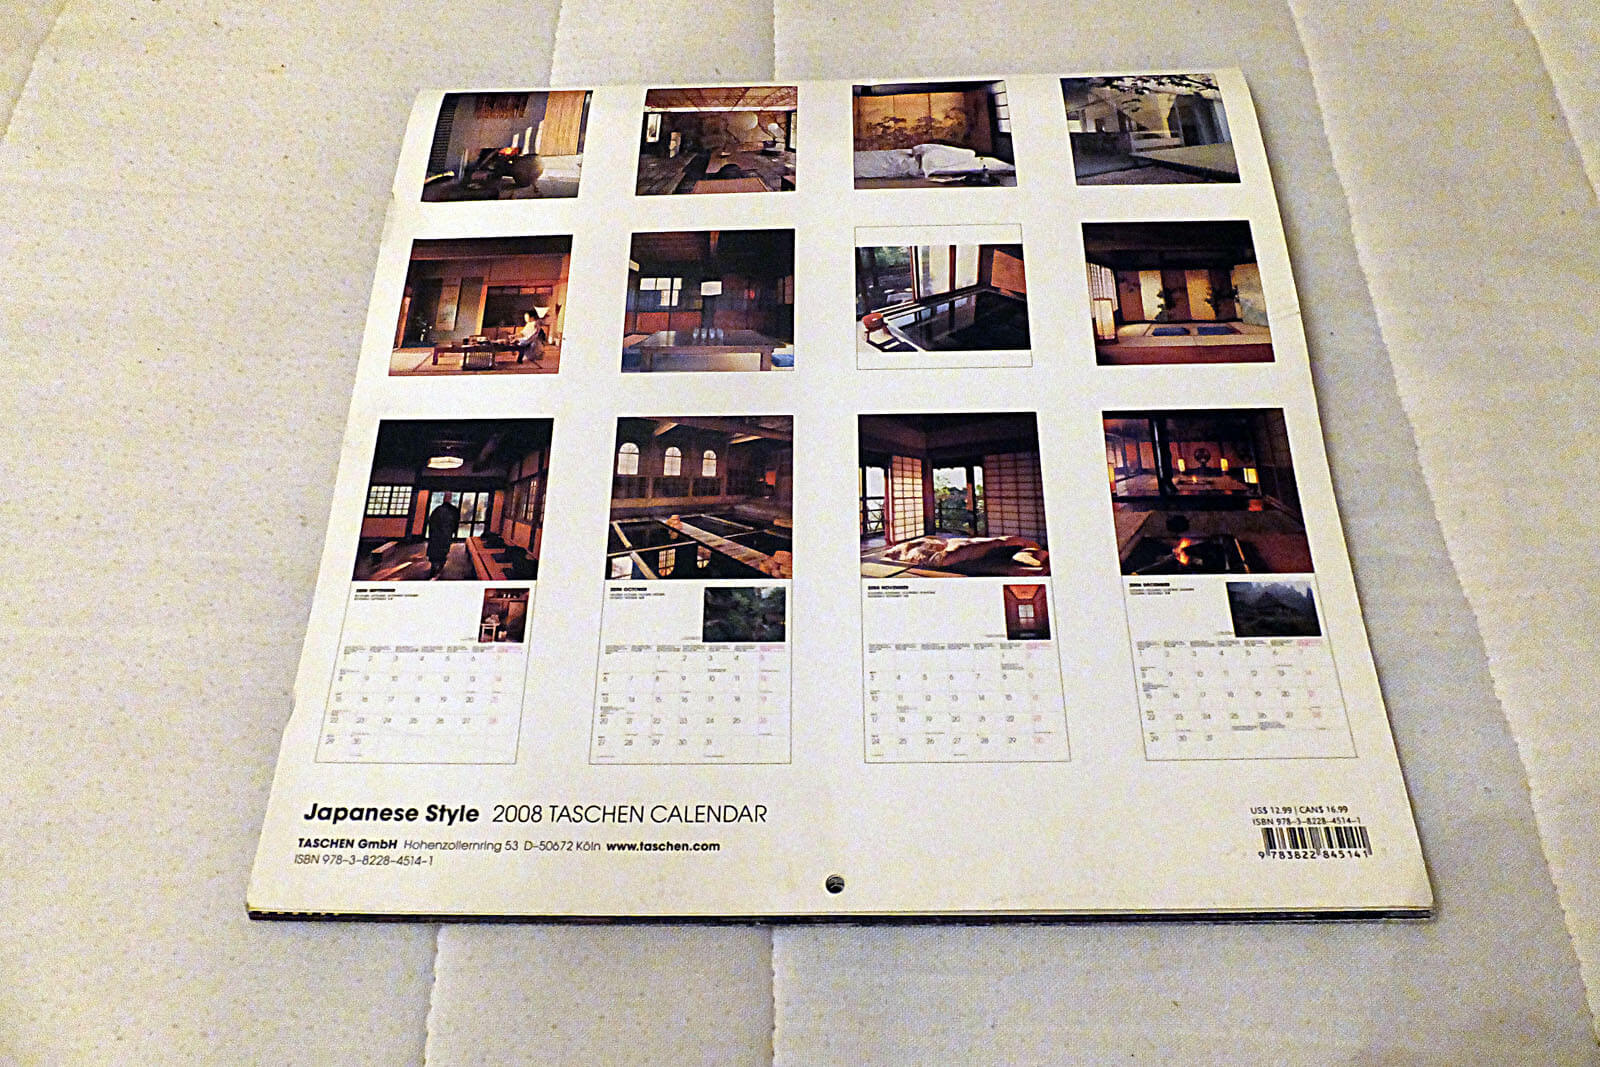 Kalender im japanischen Stil